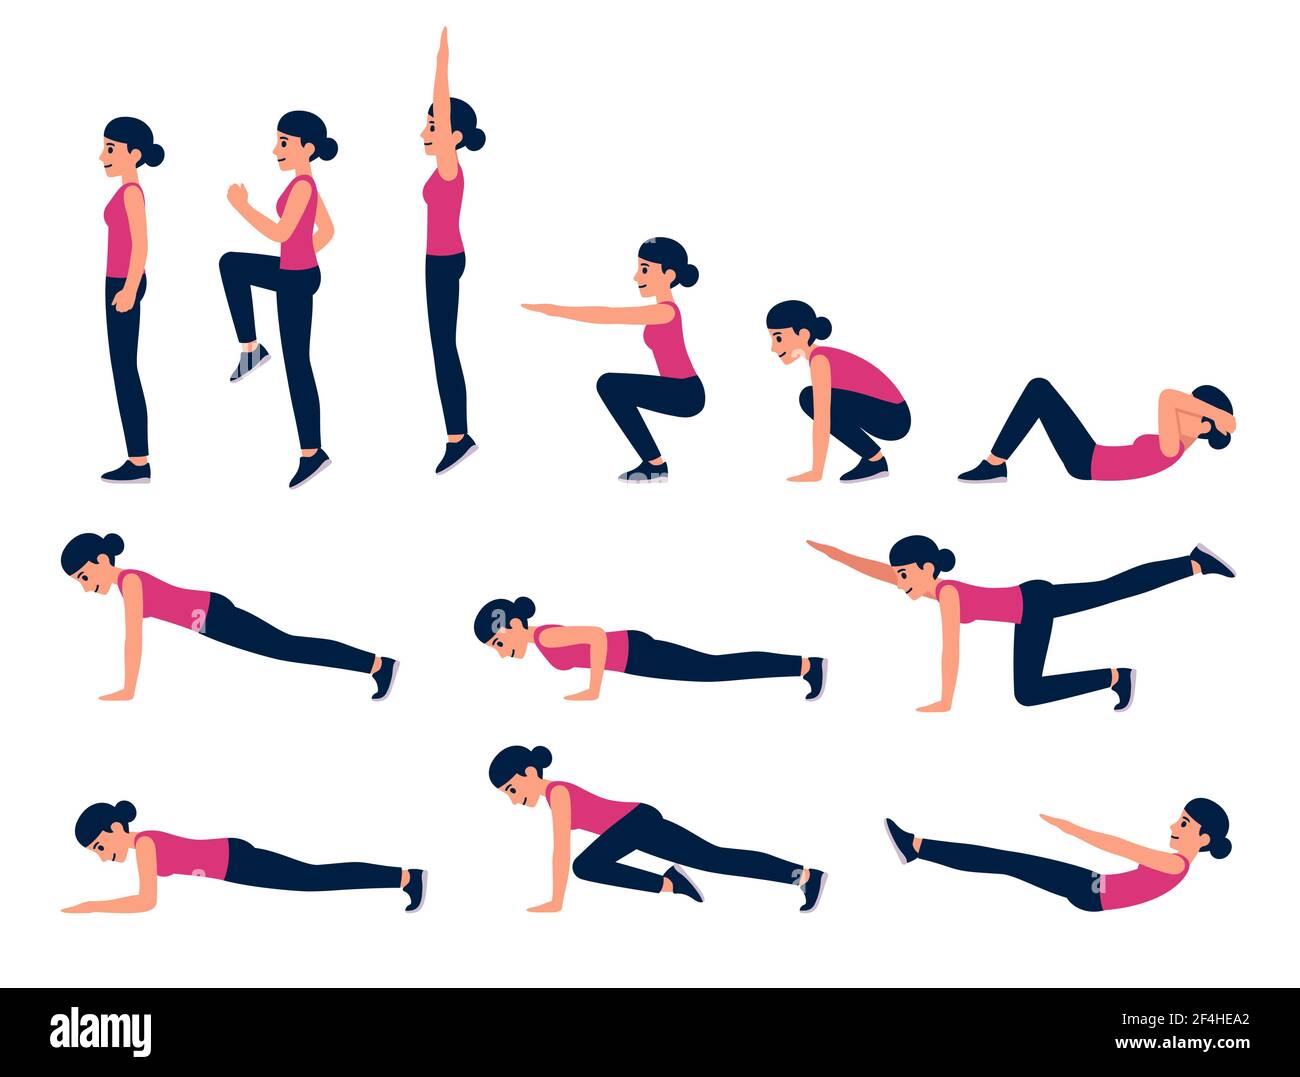 Ensemble d'illustrations d'exercice de poids corporel de femme de dessin animé. Entraînement physique pour abs, cardio, HIIT. Clip art vectoriel isolé Illustration de Vecteur